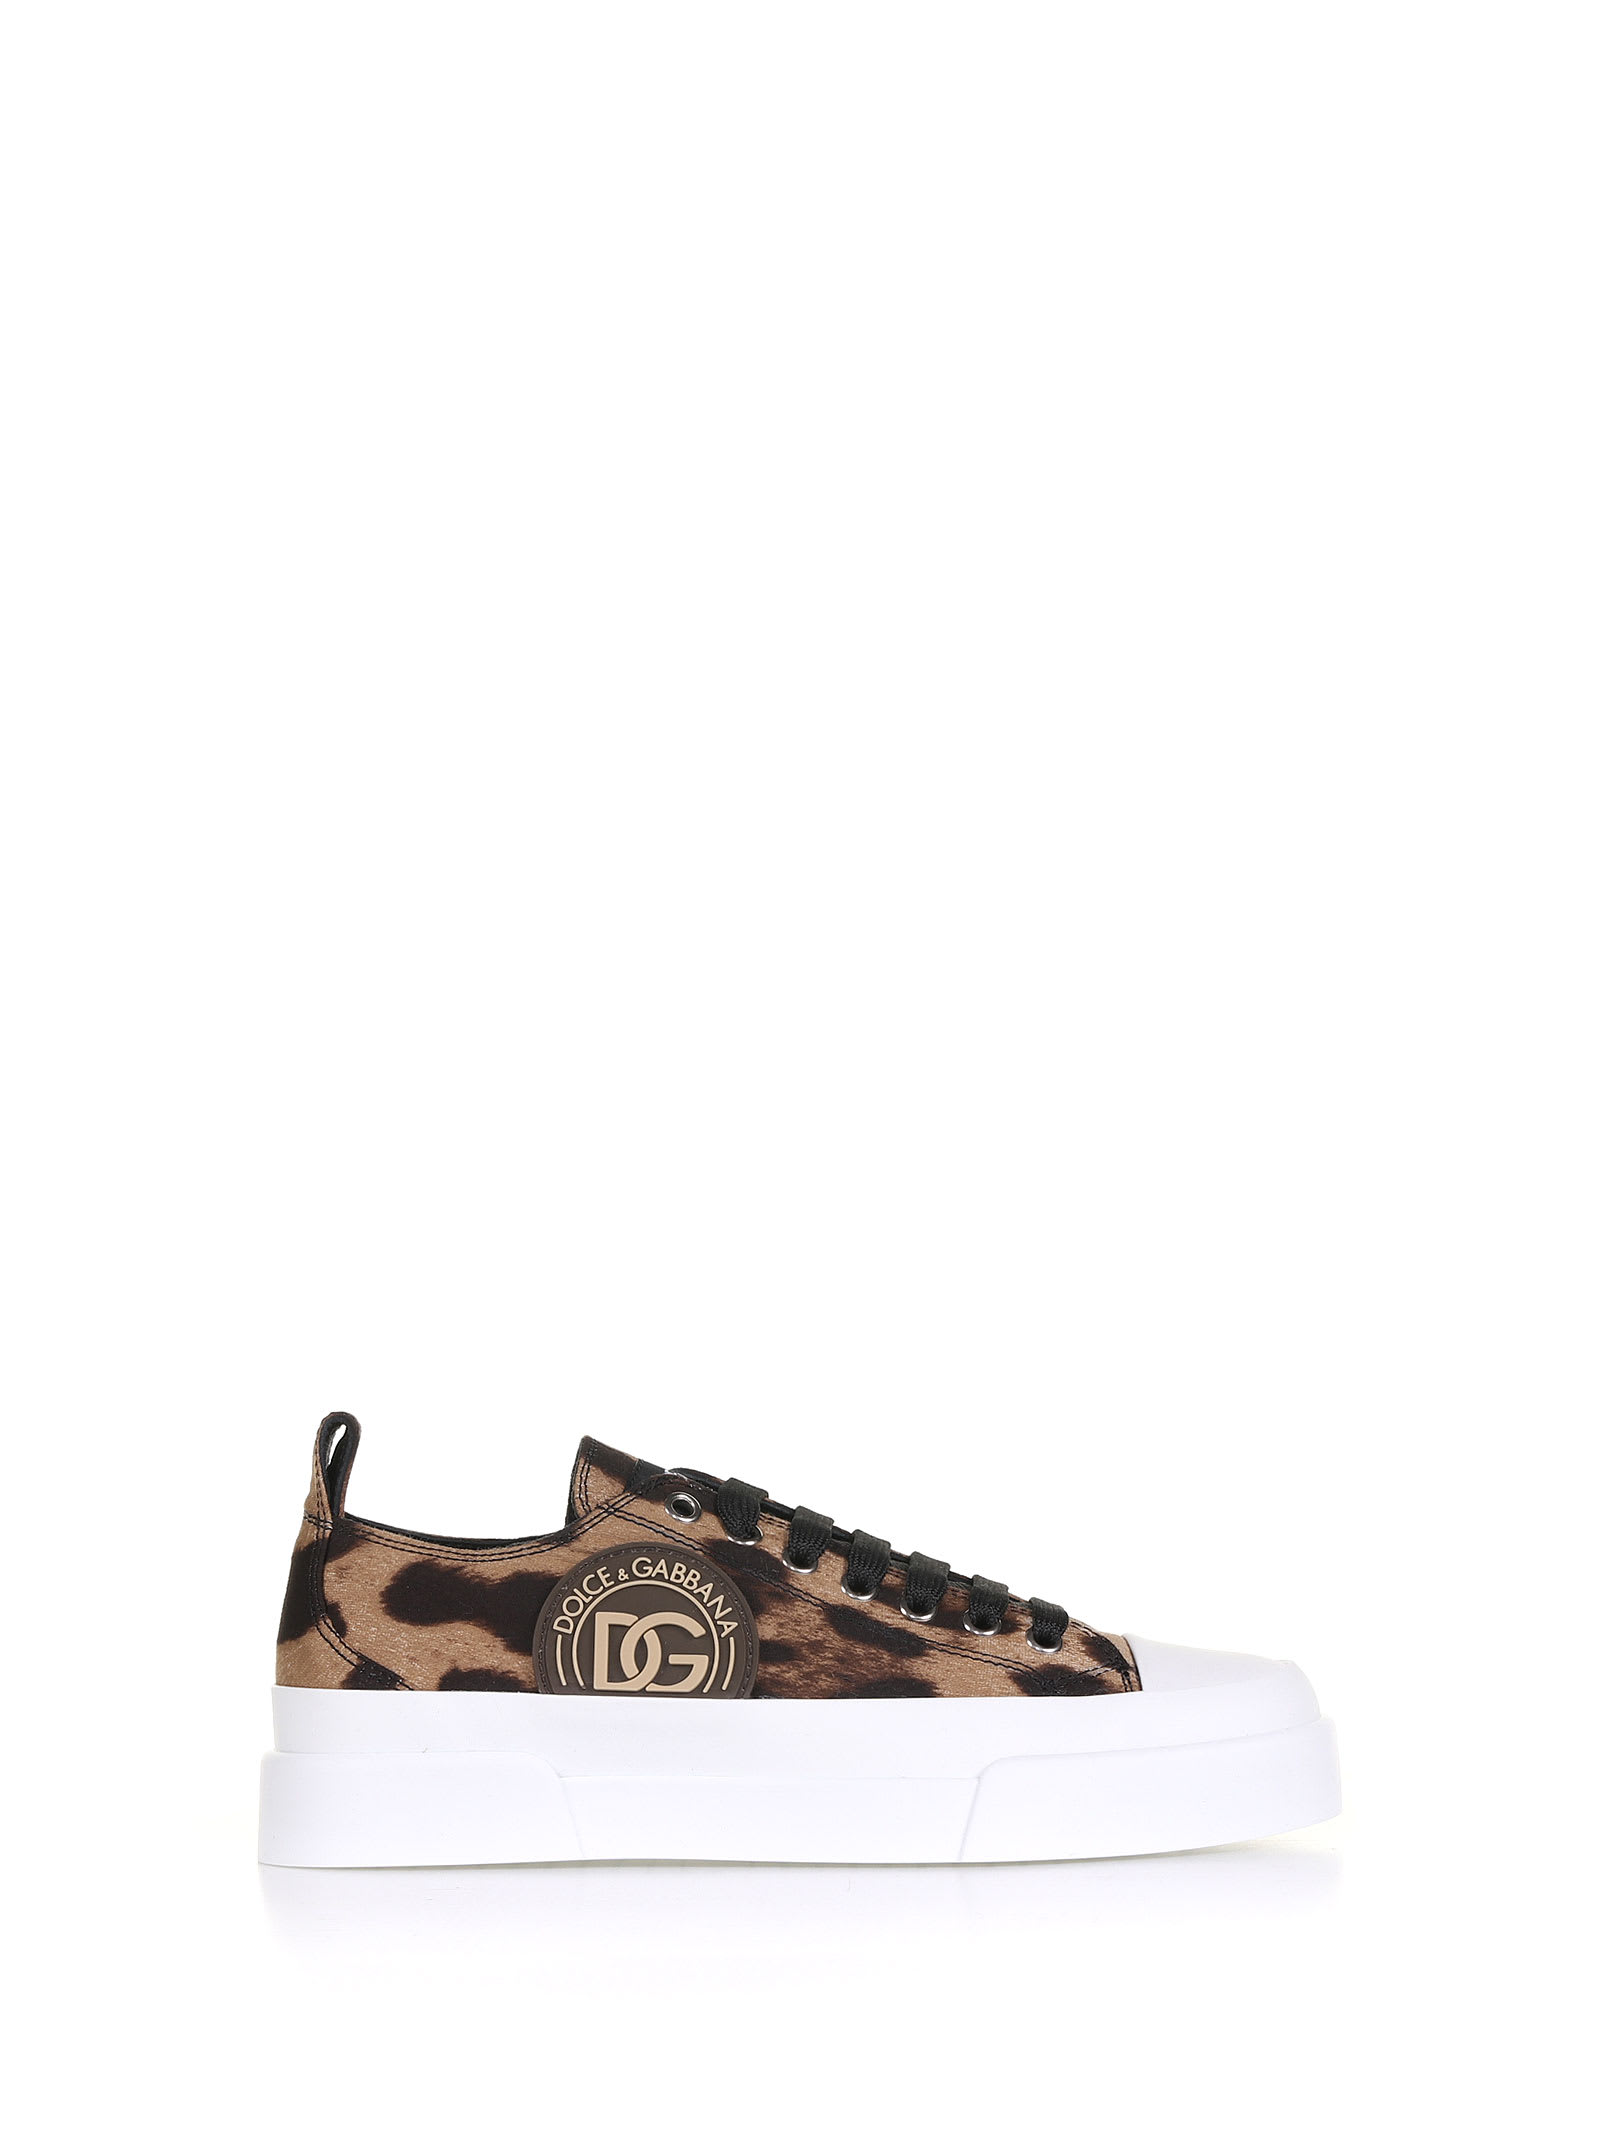 Dolce & Gabbana Leopard Sneaker With Logo